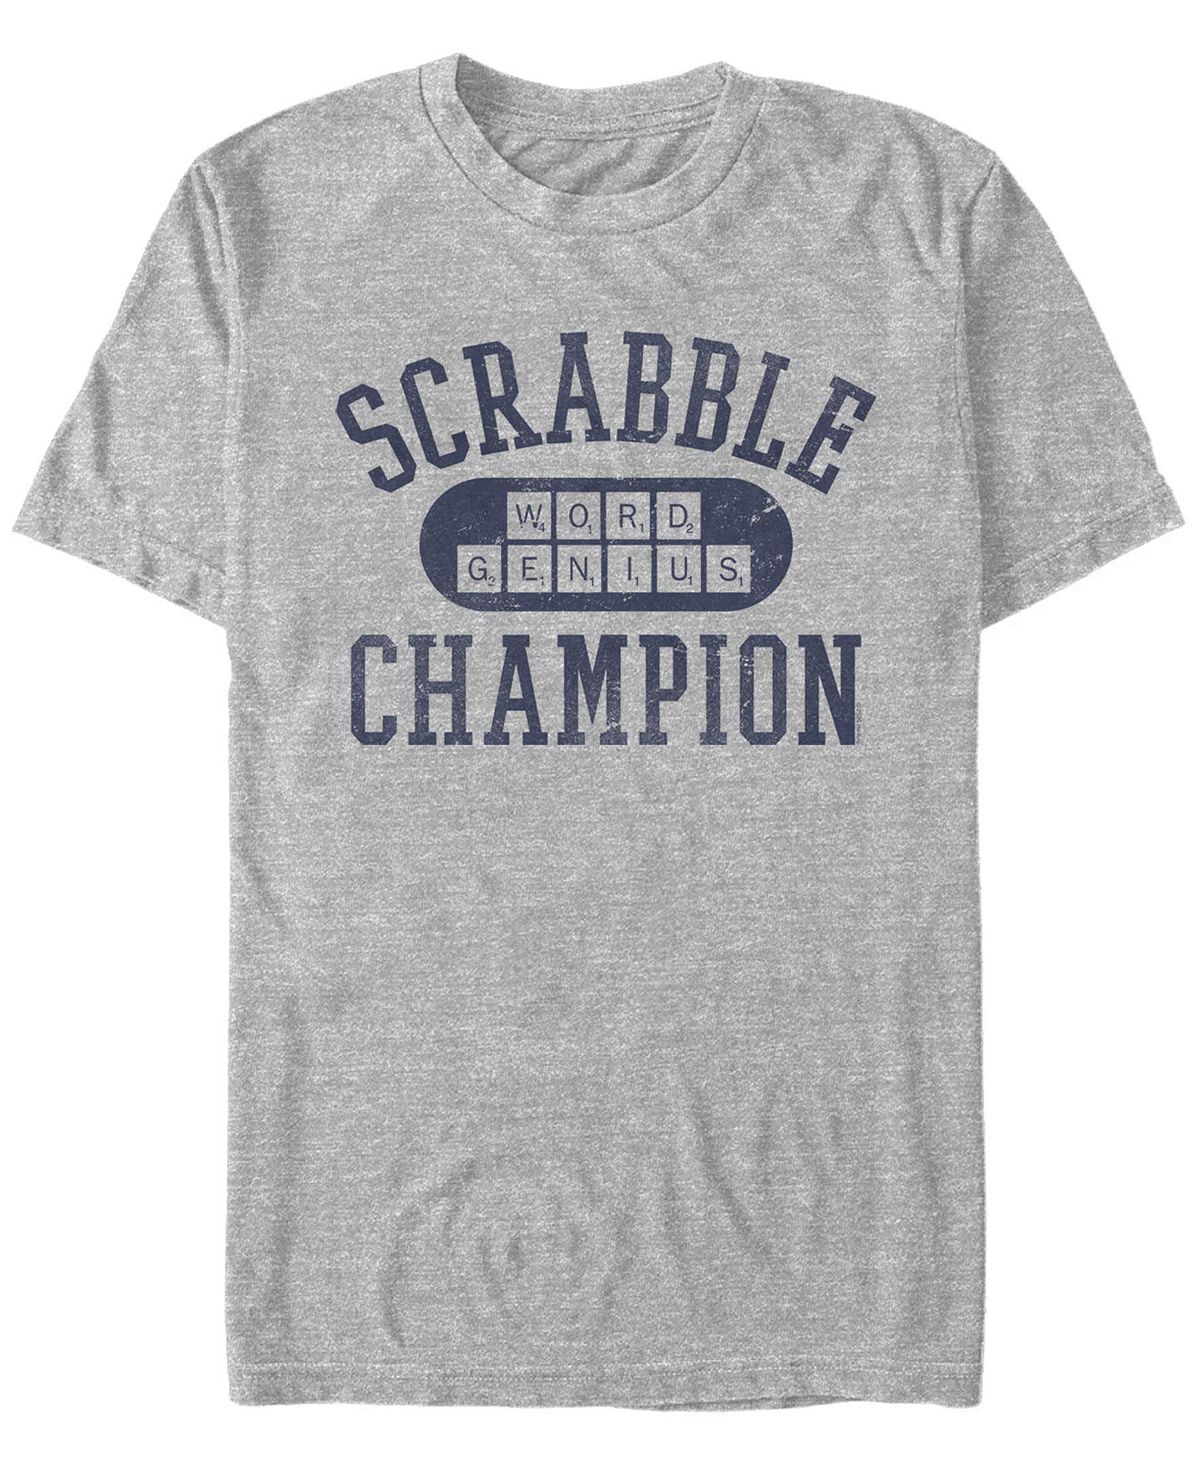 Мужская футболка с круглым вырезом и короткими рукавами scrabble champion Fifth Sun, мульти official scrabble words